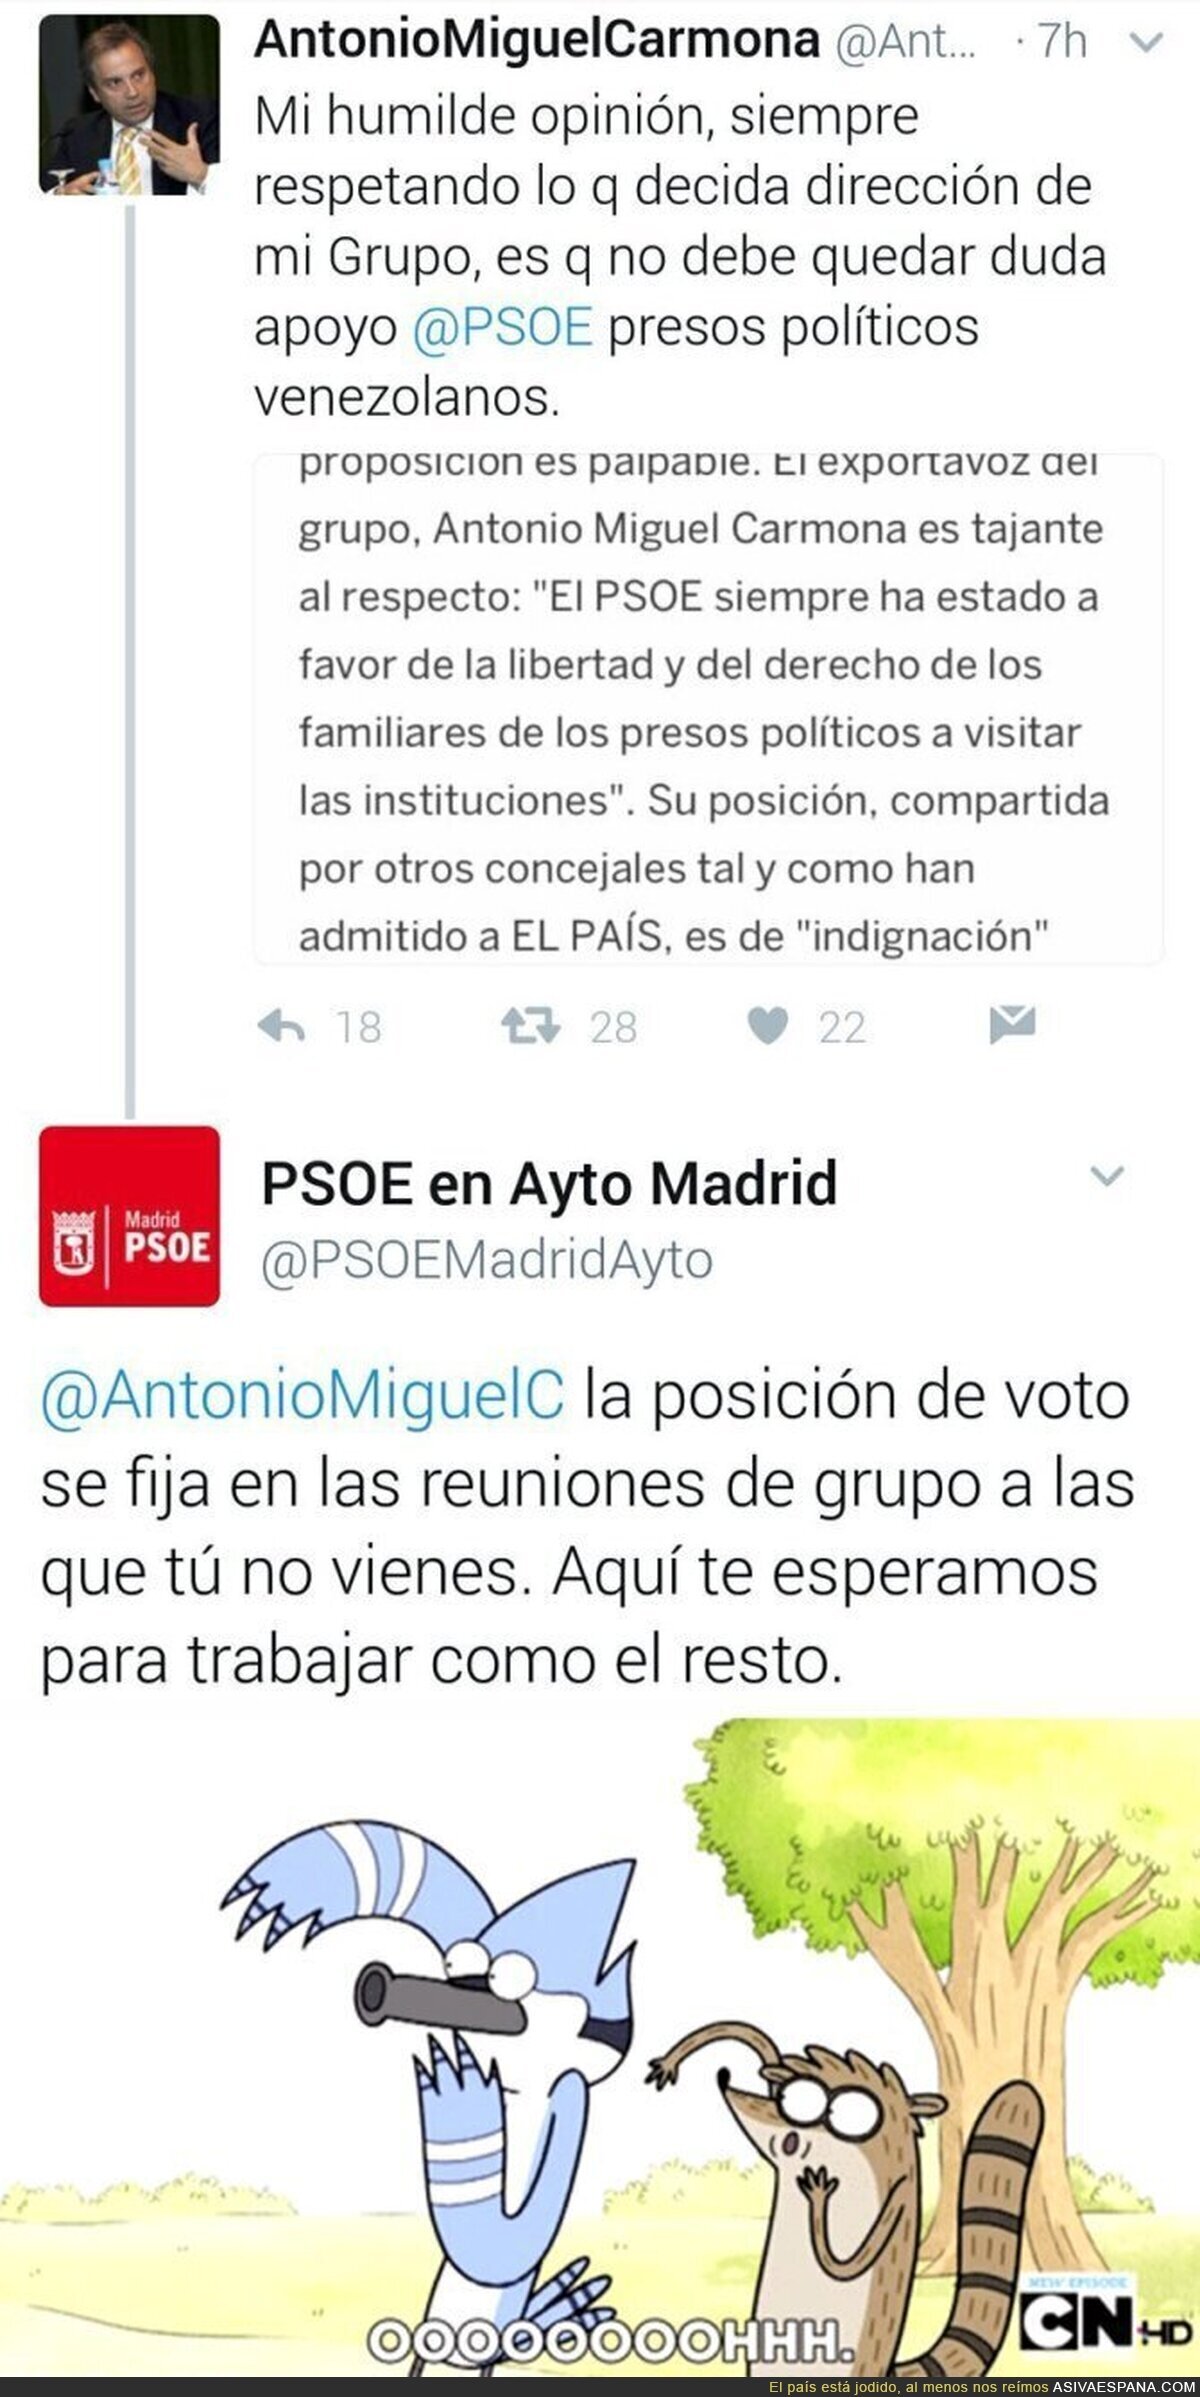 La tremenda bronca del PSOE del Ayuntamiento de Madrid a Antonio Miguel Carmona después de este tuit